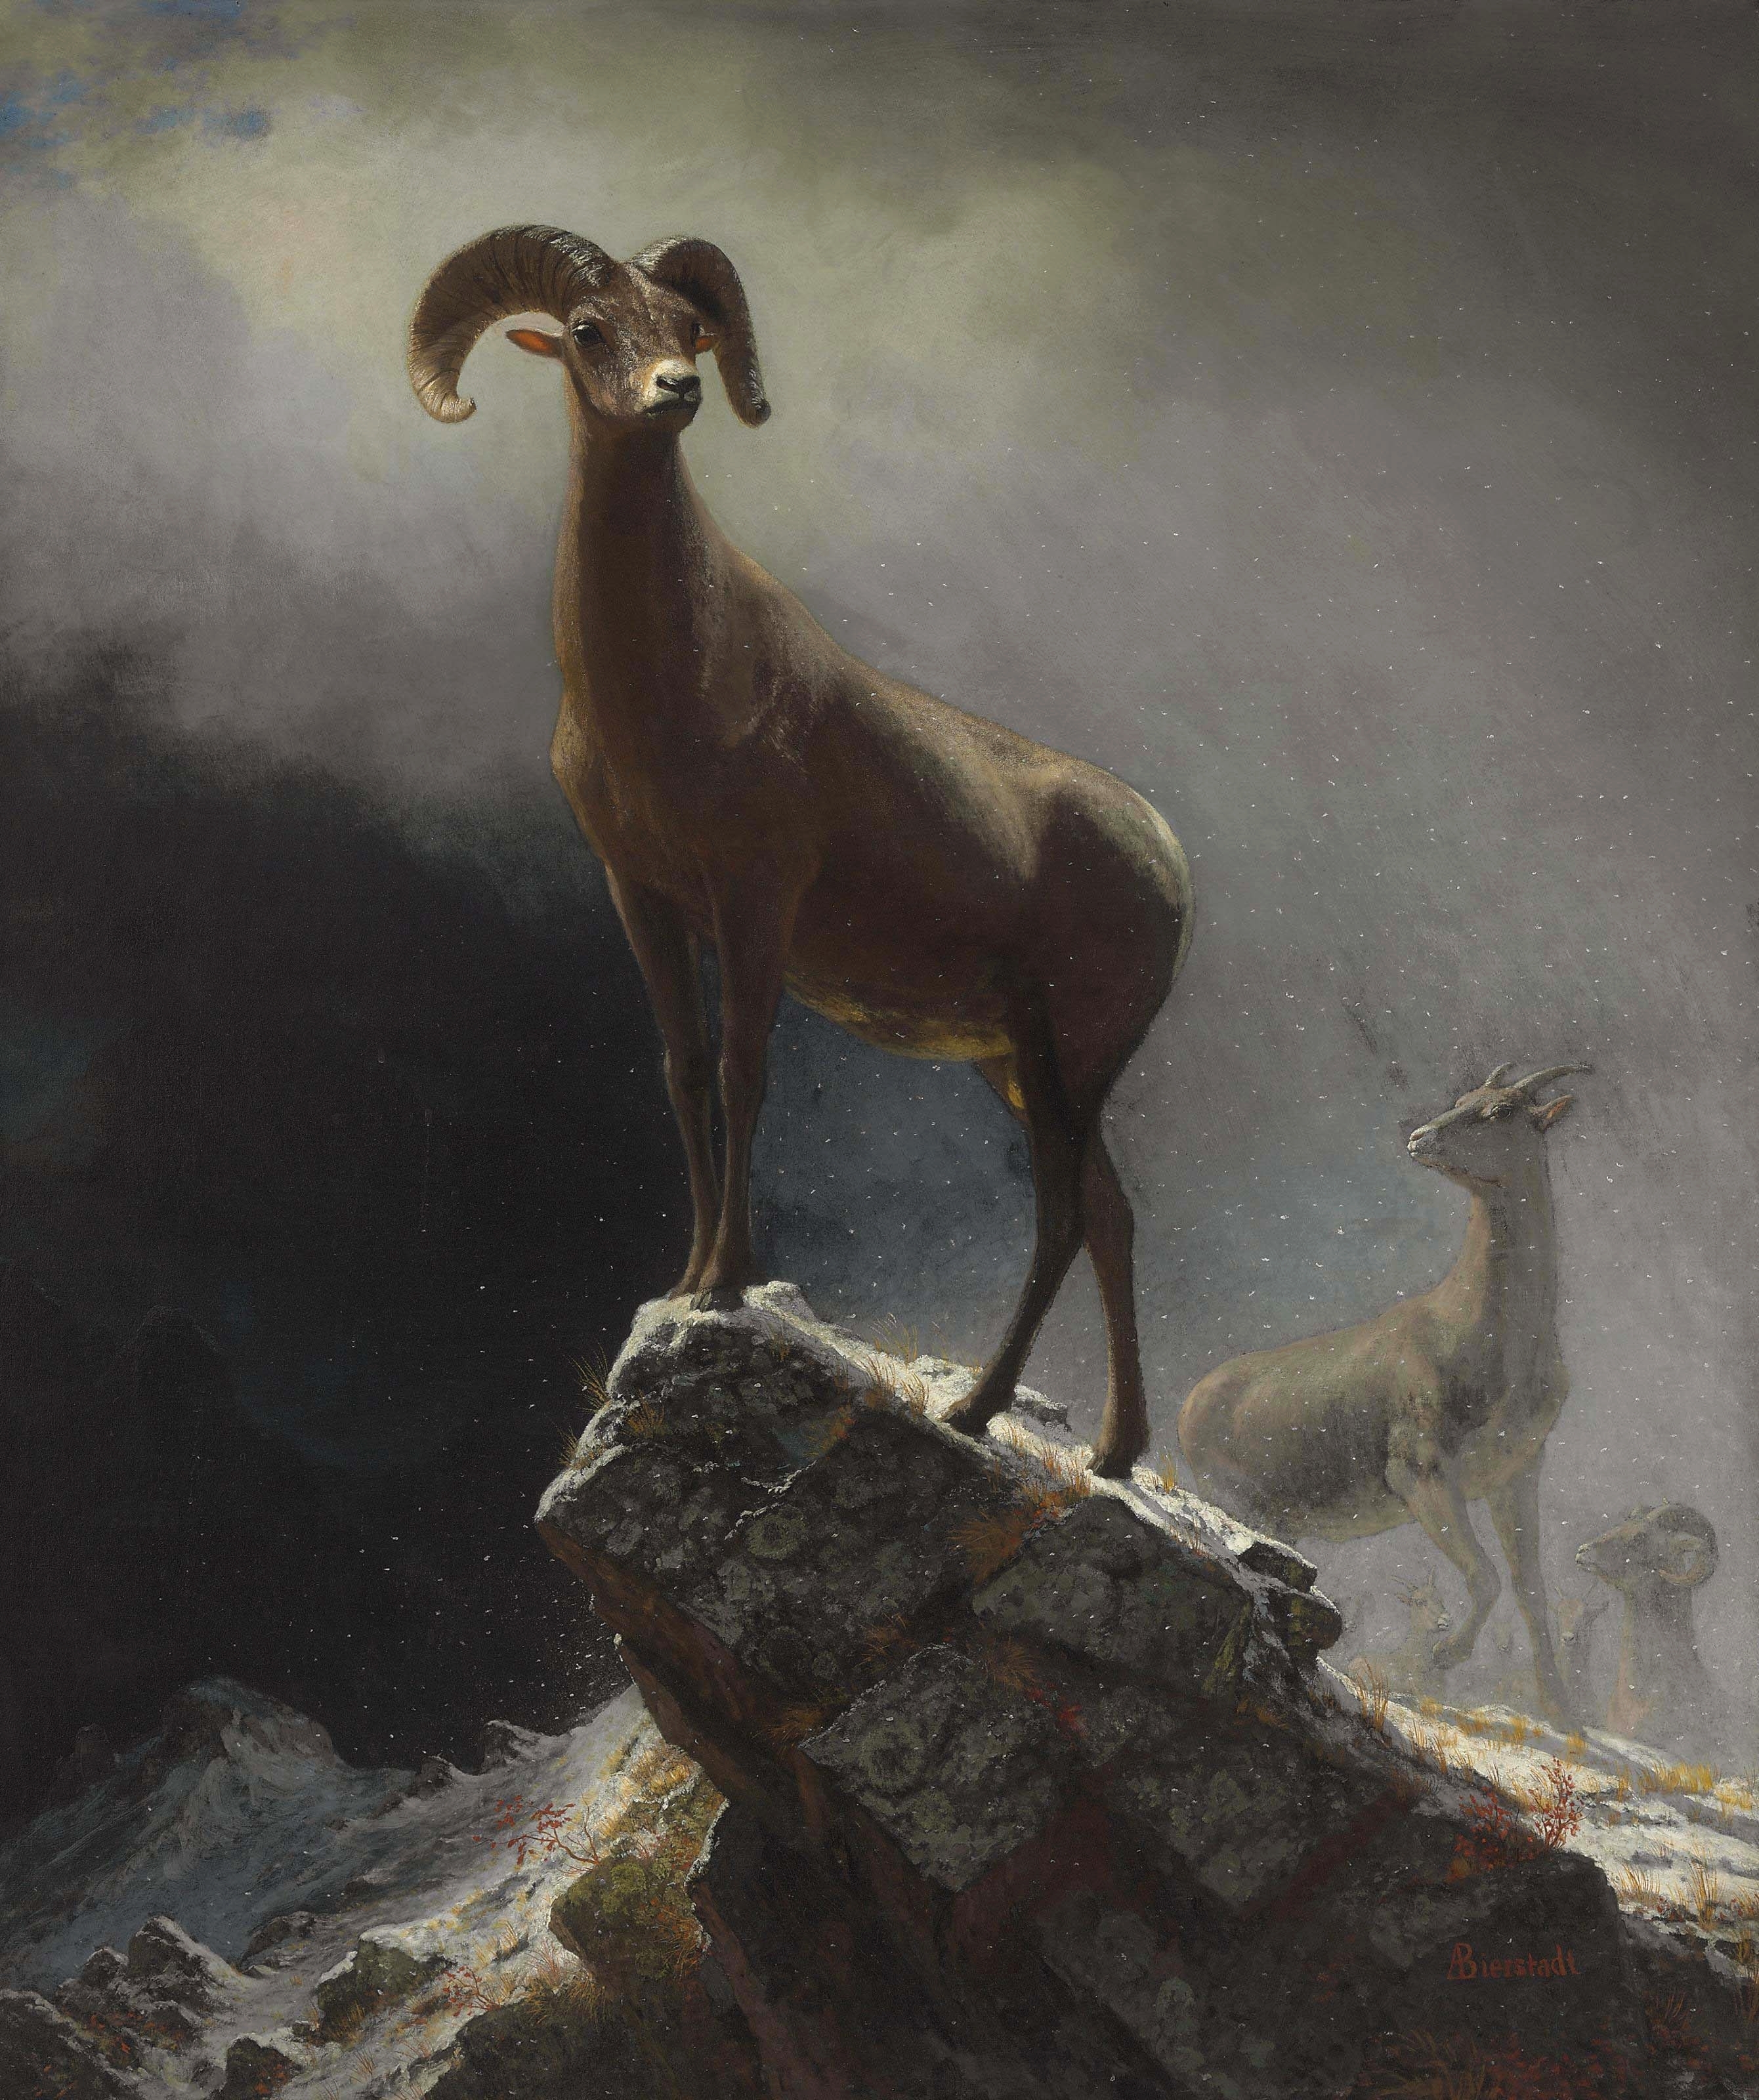 Albert Bierstadt - Rocky Mountain Sheep or Big Horn, Ovis, Montana